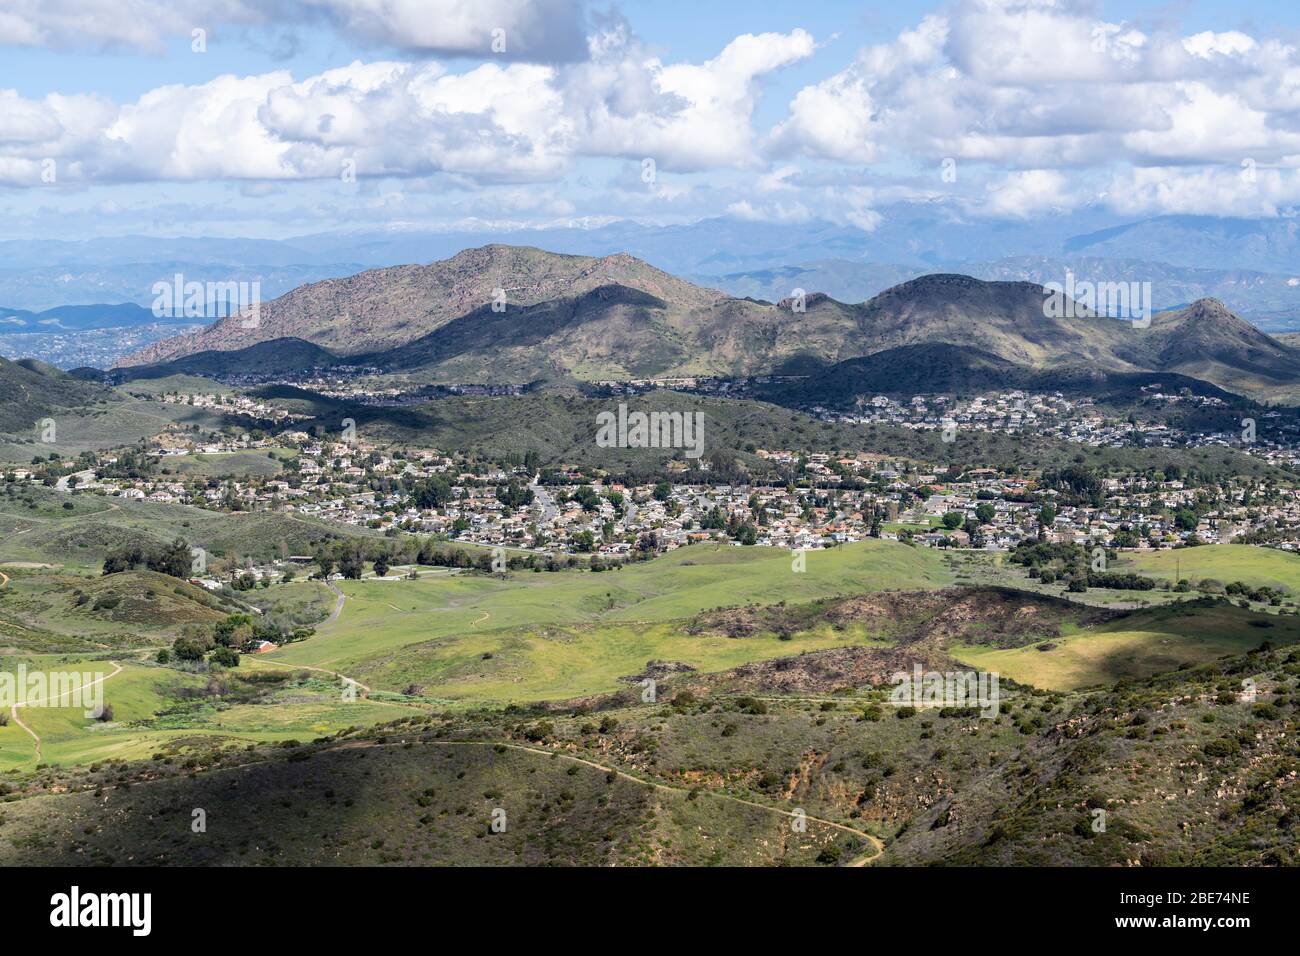 Blick auf die Berggipfel des Nationalparks, Wiesen und vorstädtische Wohnsiedlungsflächen im malerischen Newbury Park in der Nähe von Thousand Oaks und Los Angeles, Kalifornien. Stockfoto